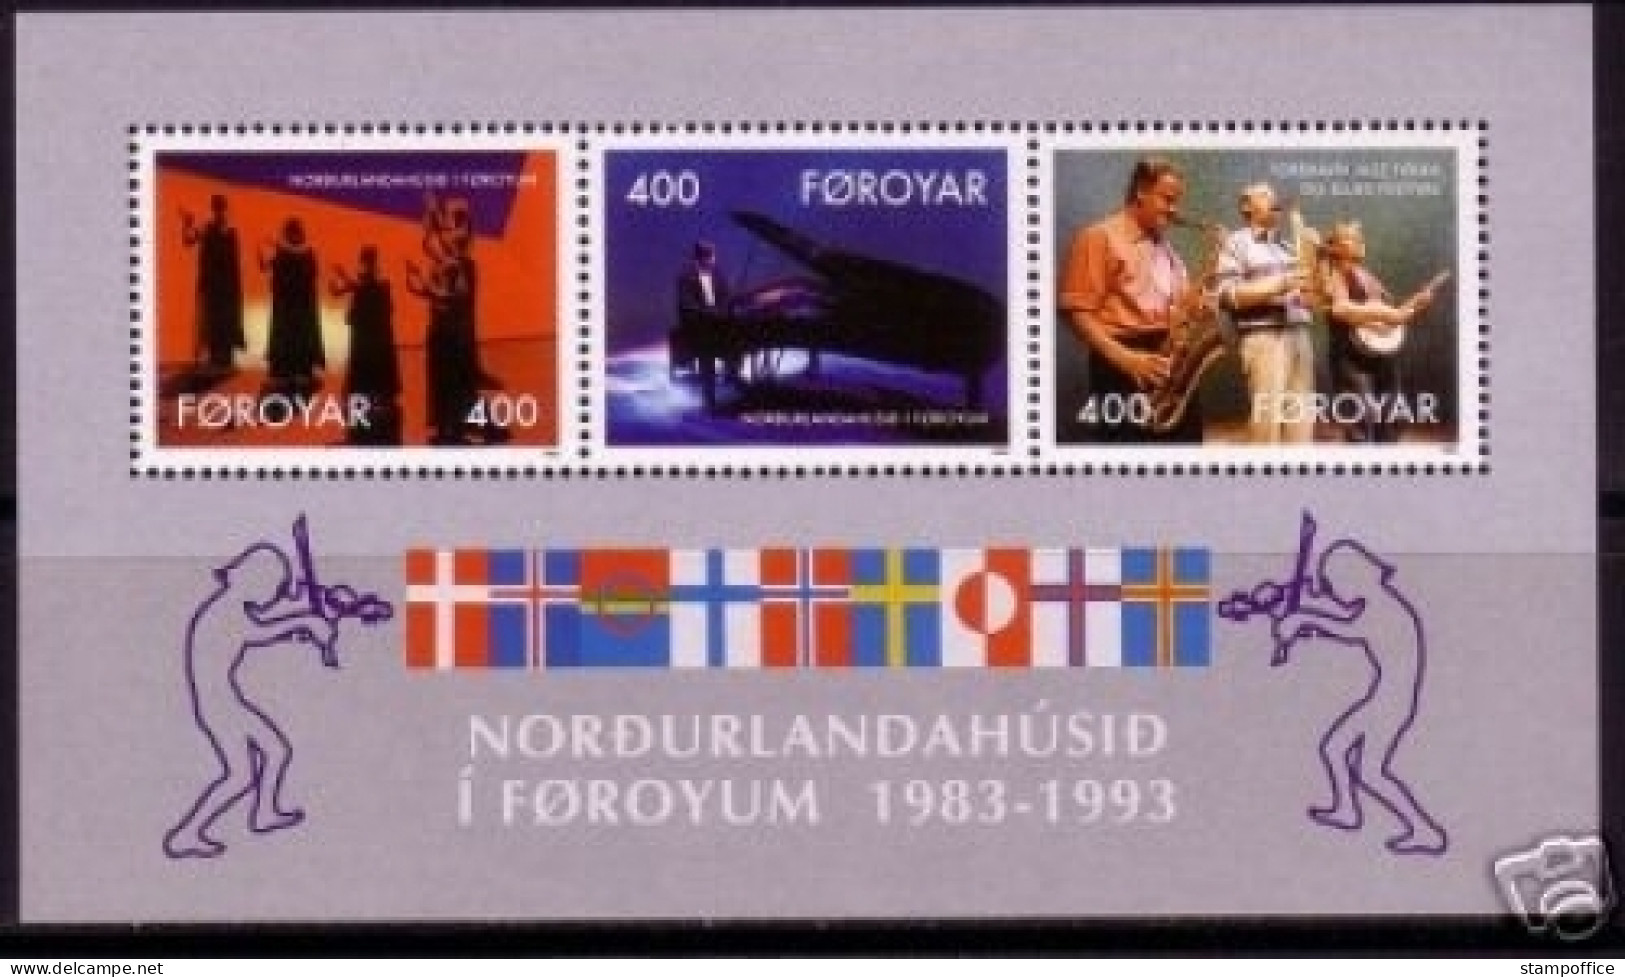 FÄRÖER BLOCK 6 POSTFRISCH(MINT) 10 JAHRE HAUS DES NORDENS 1993 MUSIKER JAZZ - Färöer Inseln